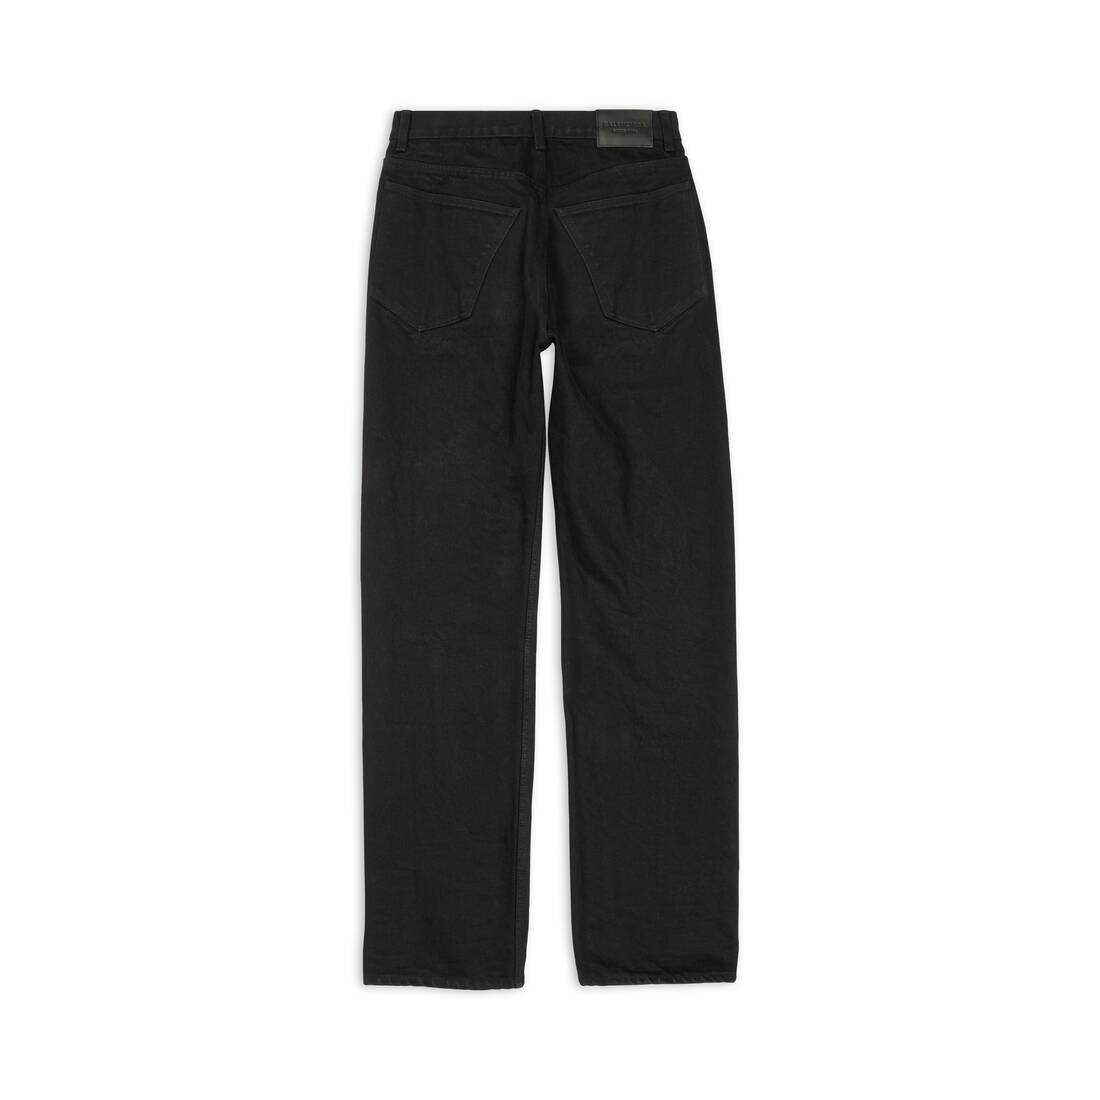 Short Balenciaga Khaki size 32 UK  US in Denim  Jeans  30483821